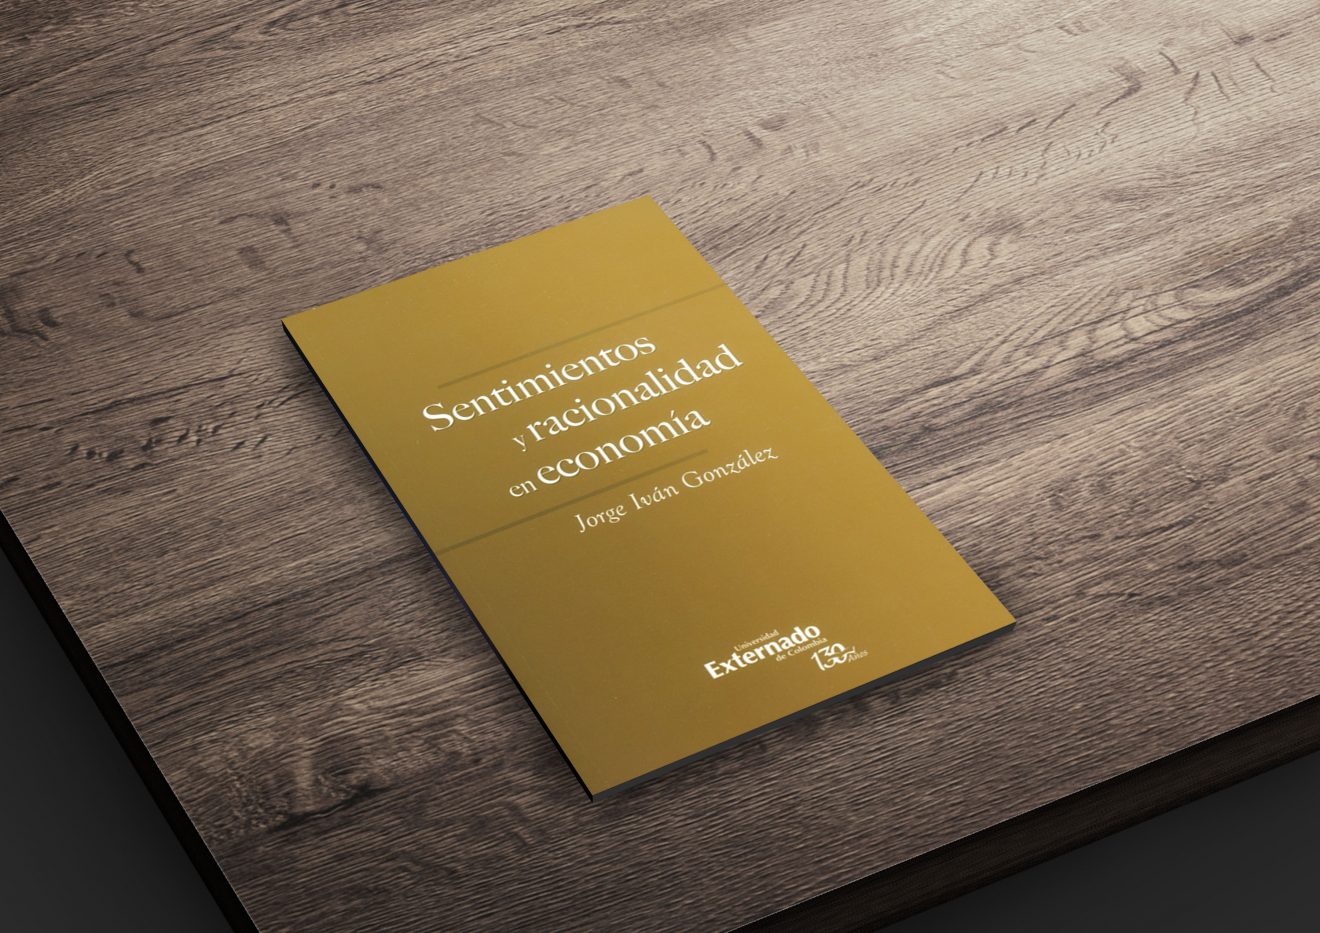 ‘Sentimientos y racionalidad en economía’, el nuevo libro del docente